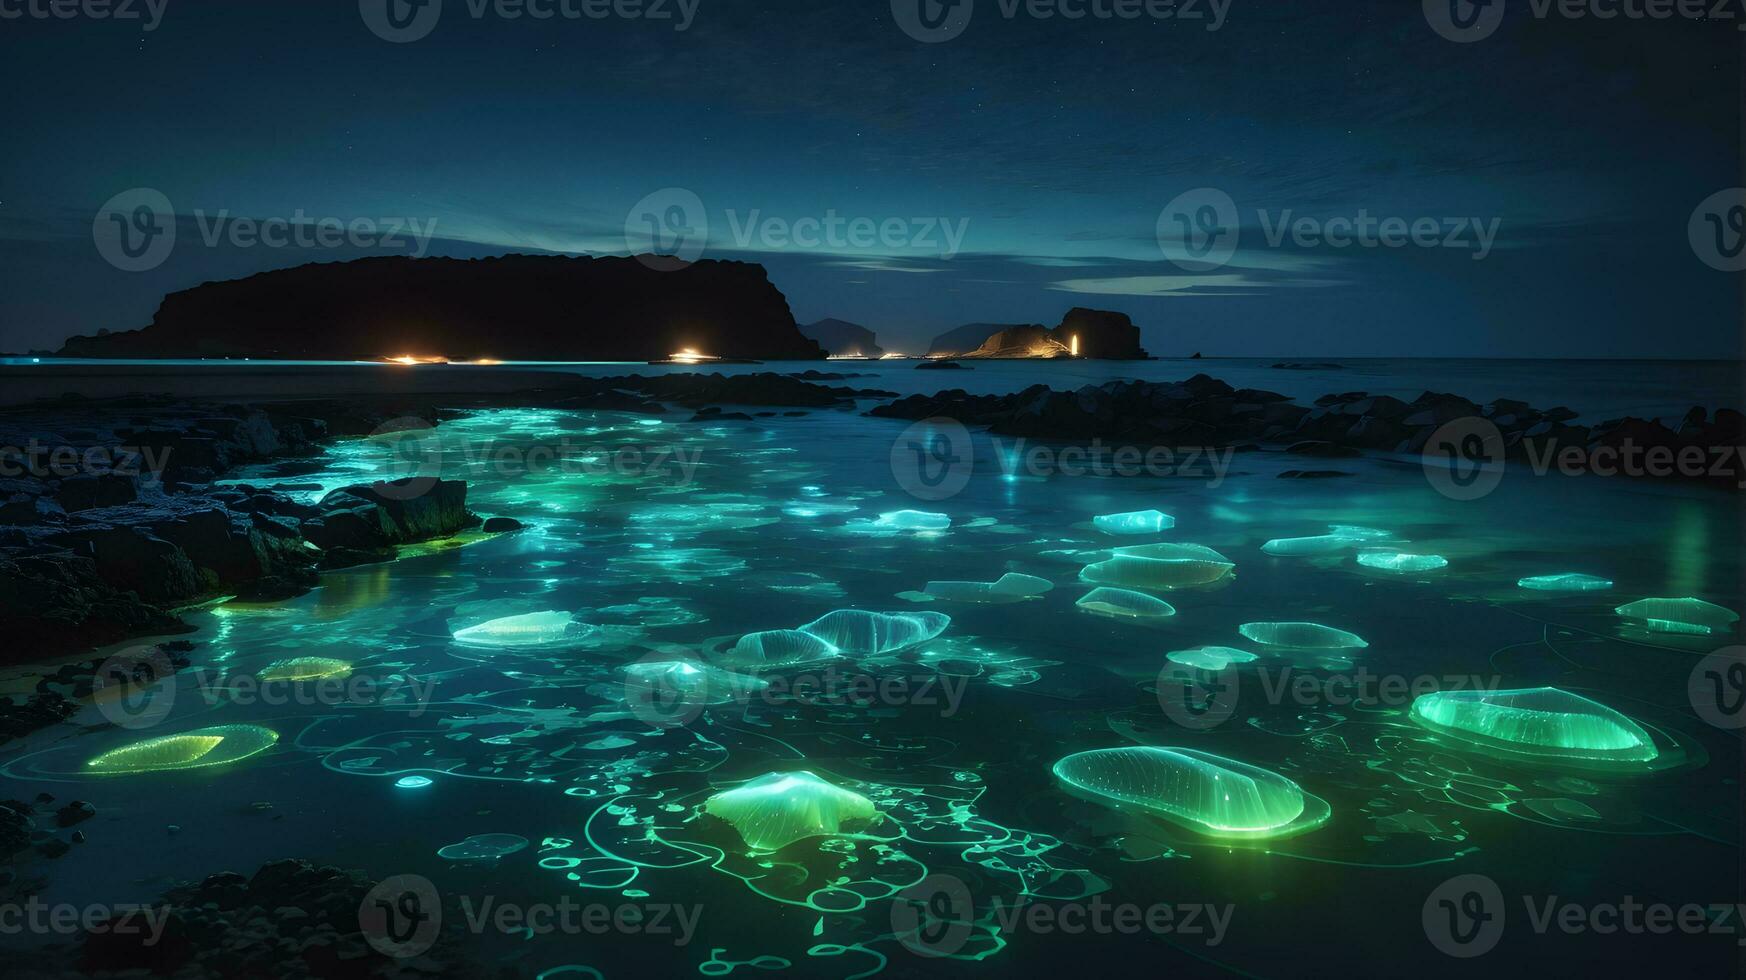 encantador bioluminiscente plancton danza en el medianoche Oceano resplandor foto